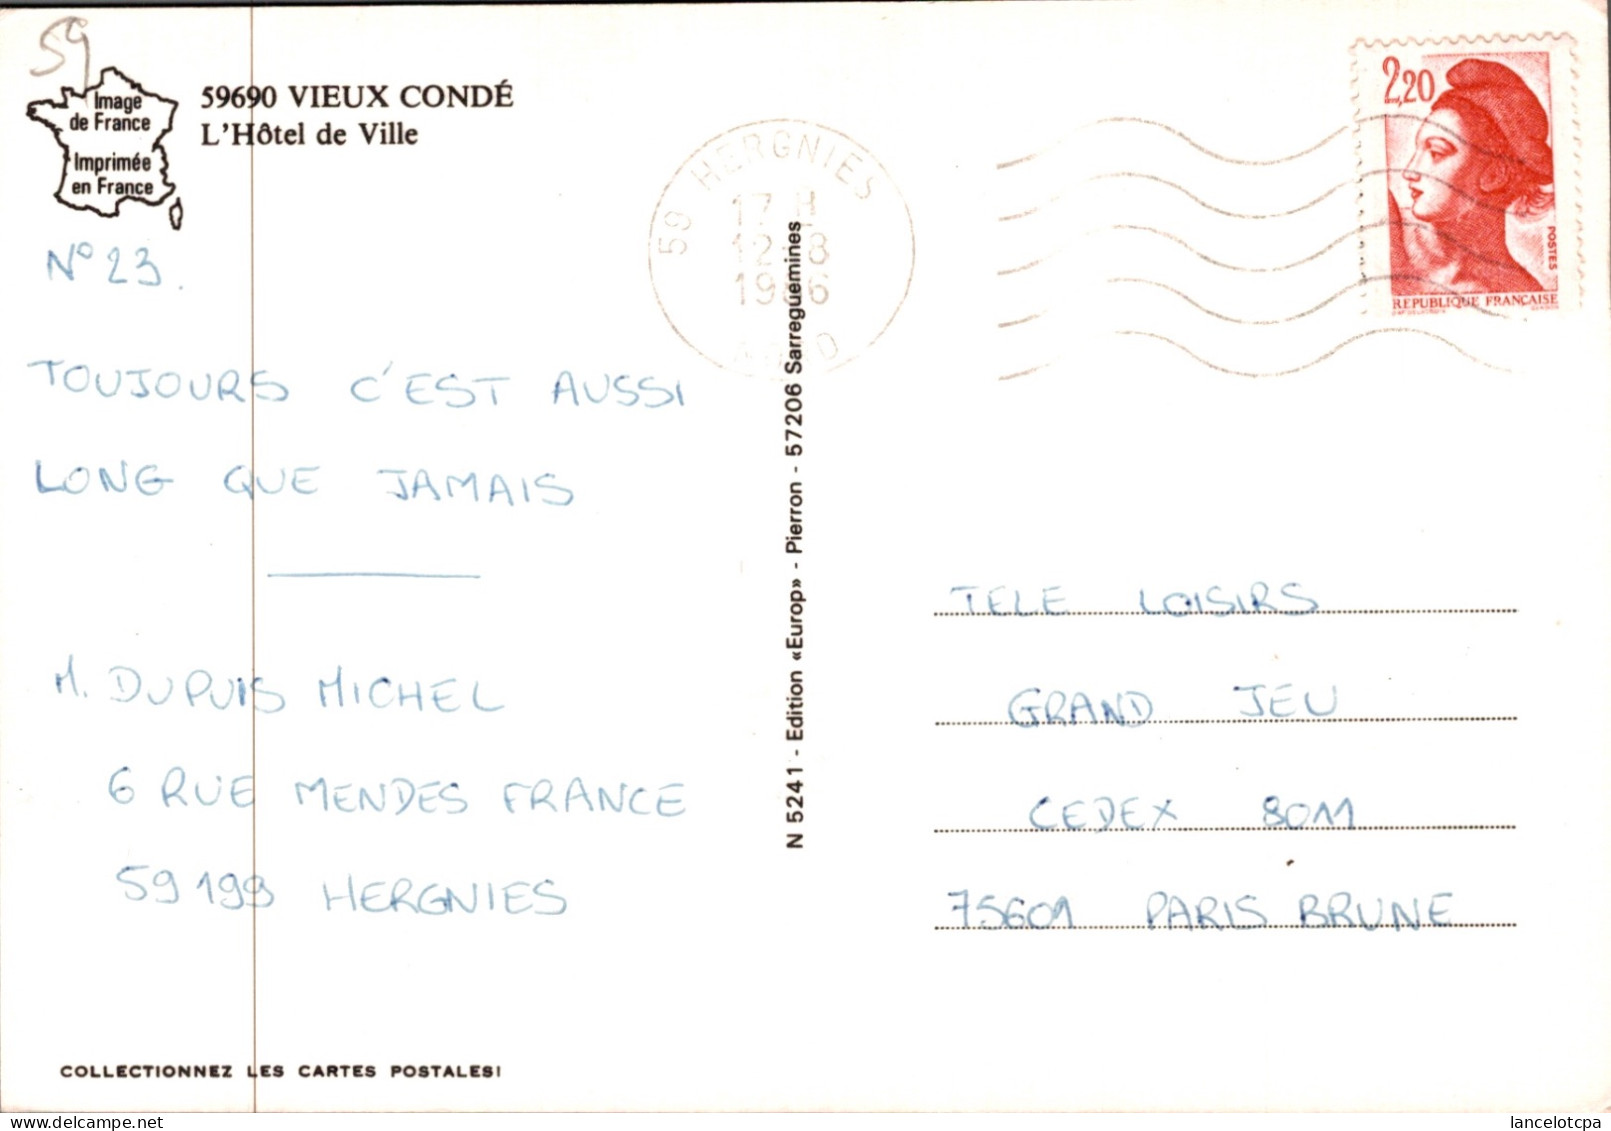 59 - VIEUX CONDE / L'HOTEL DE VILLE - AUTOS - Vieux Conde